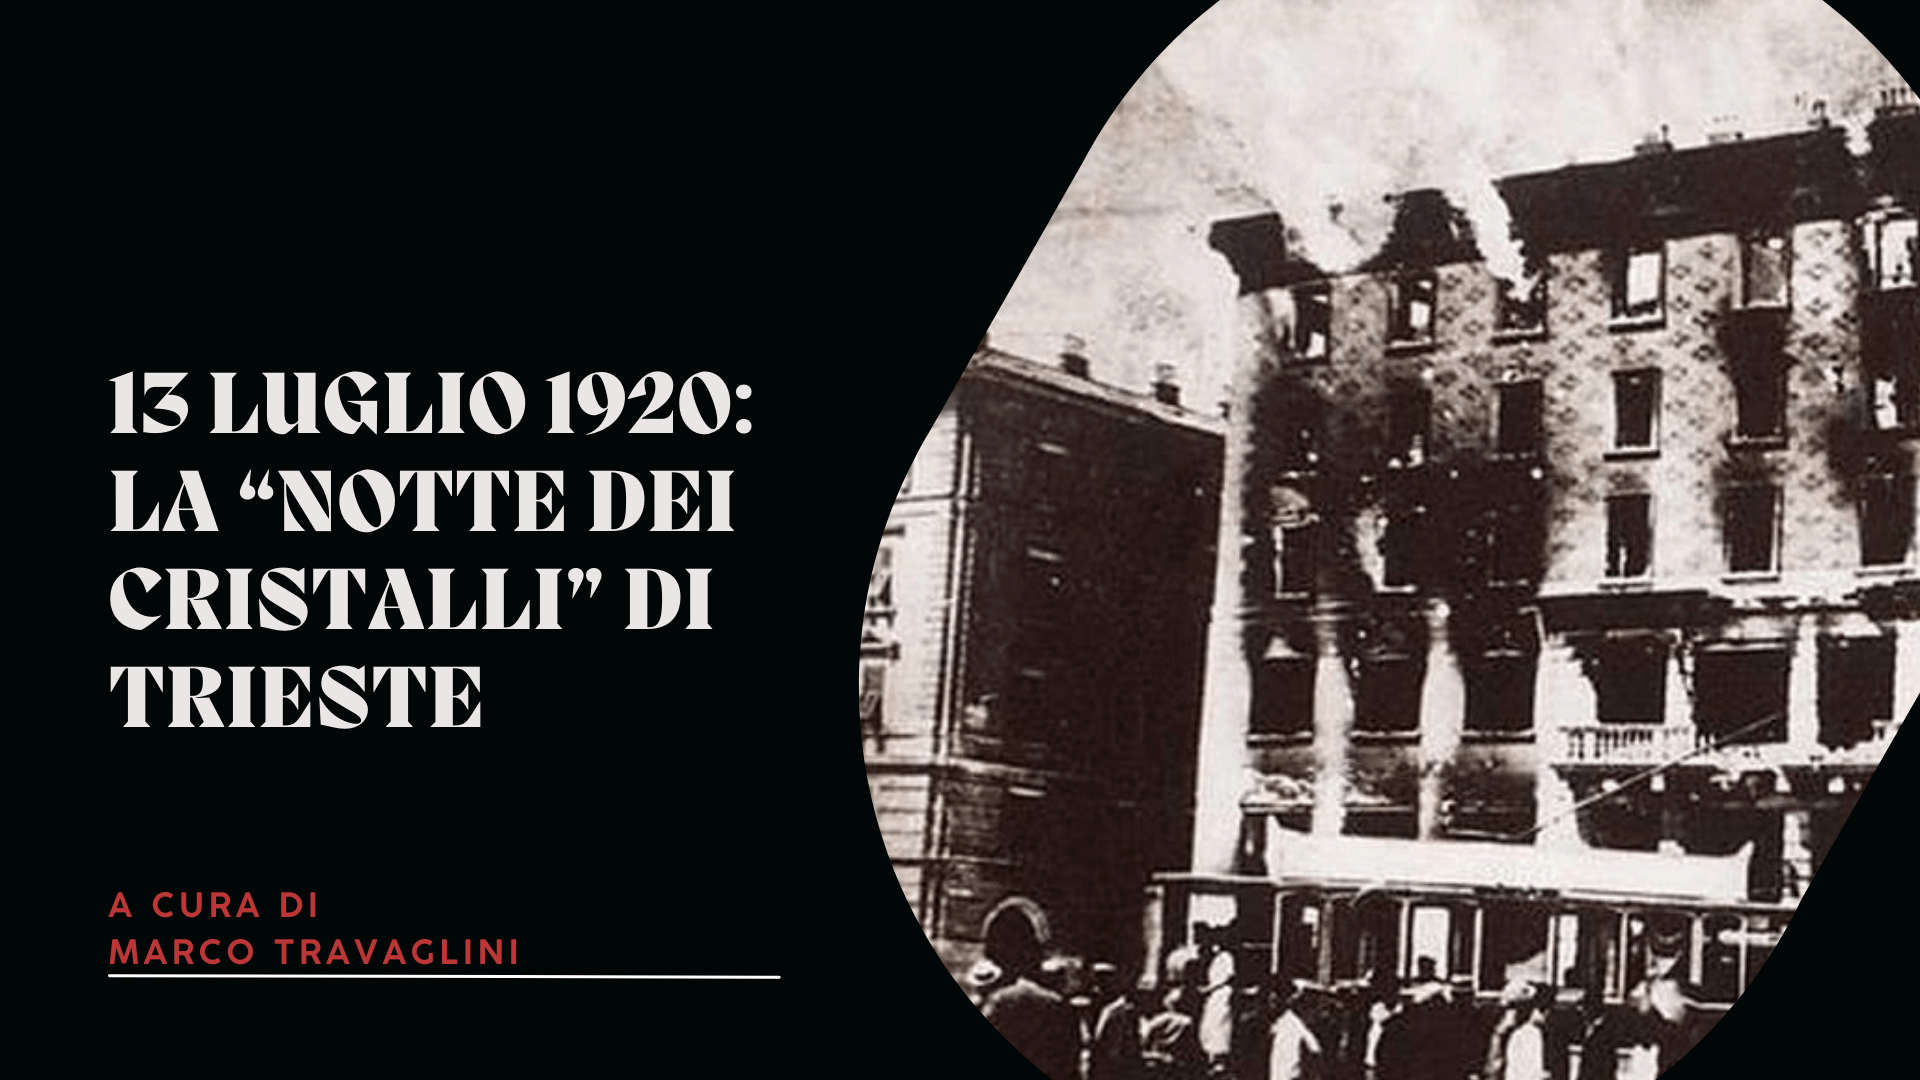 13 luglio 1920: la “notte dei cristalli” di Trieste